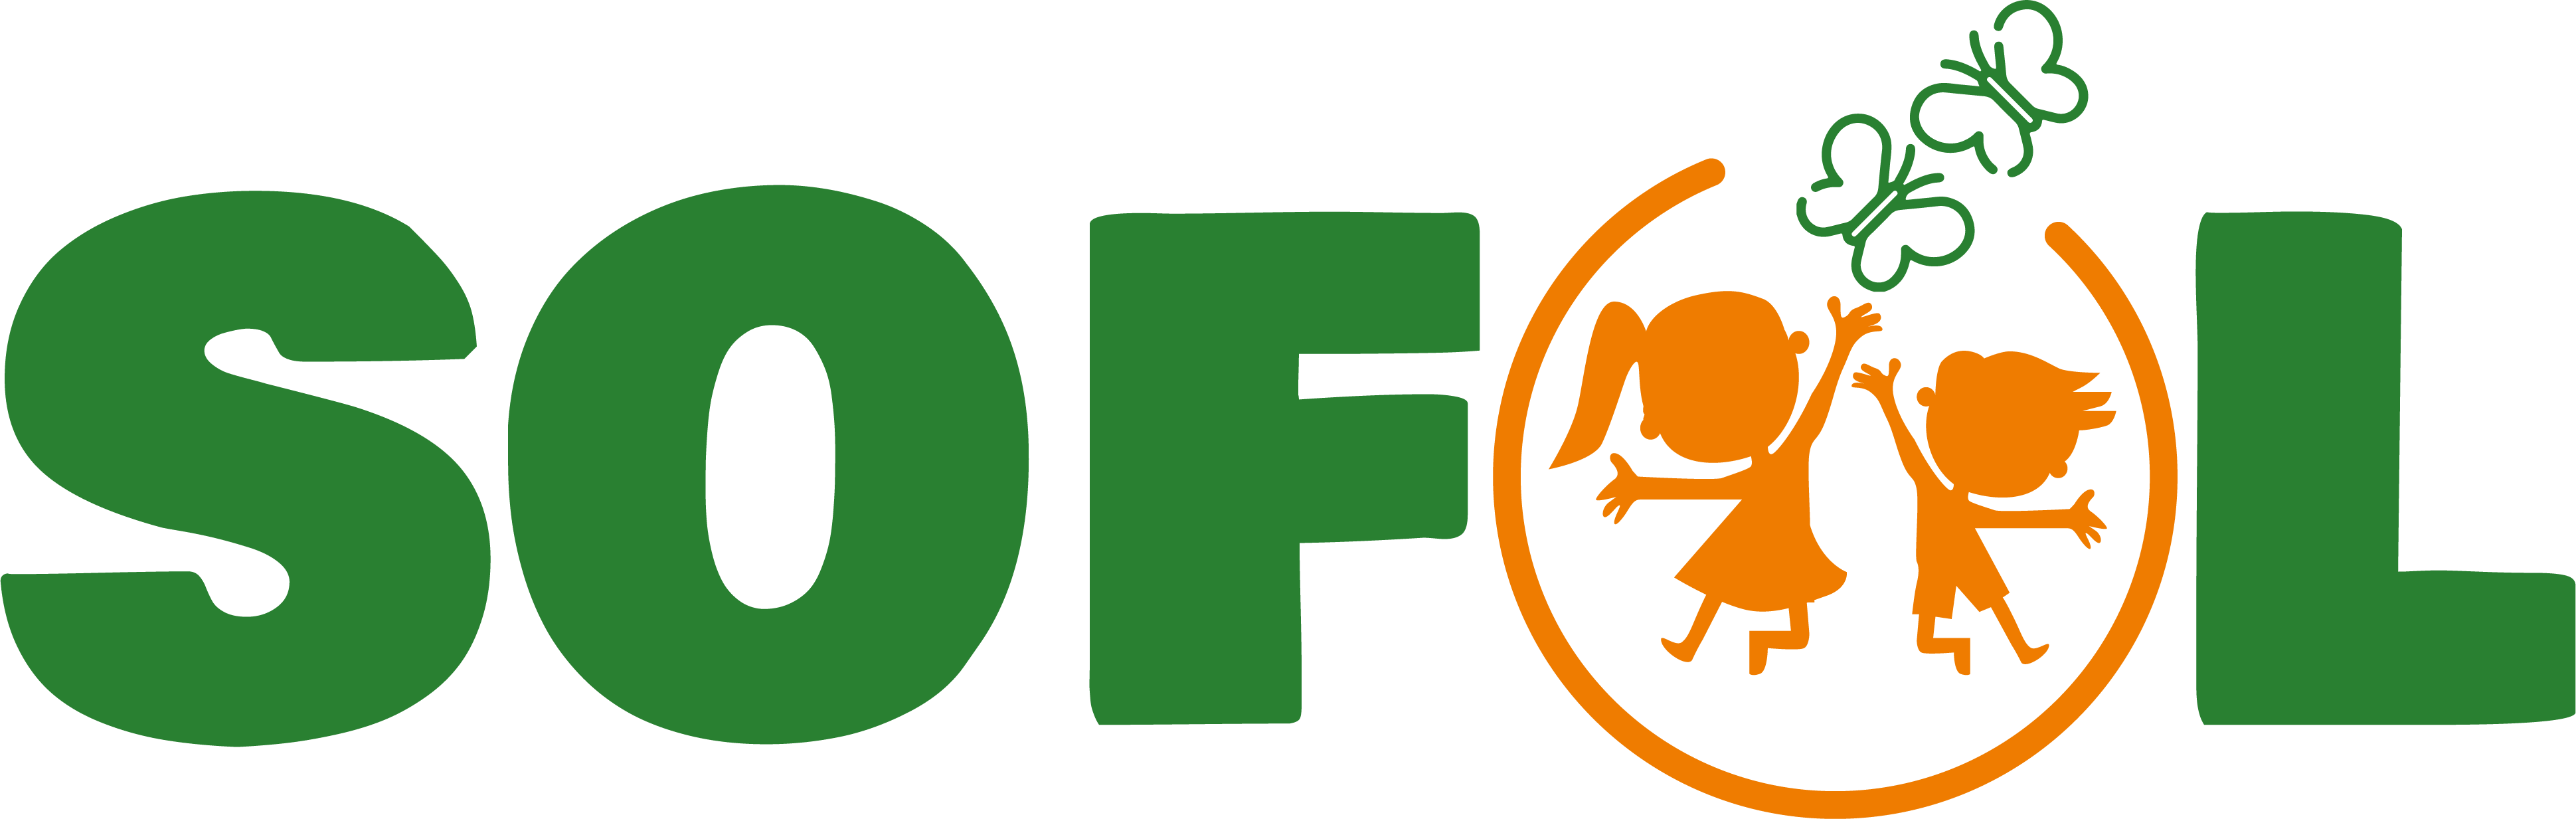 SOFOL logo